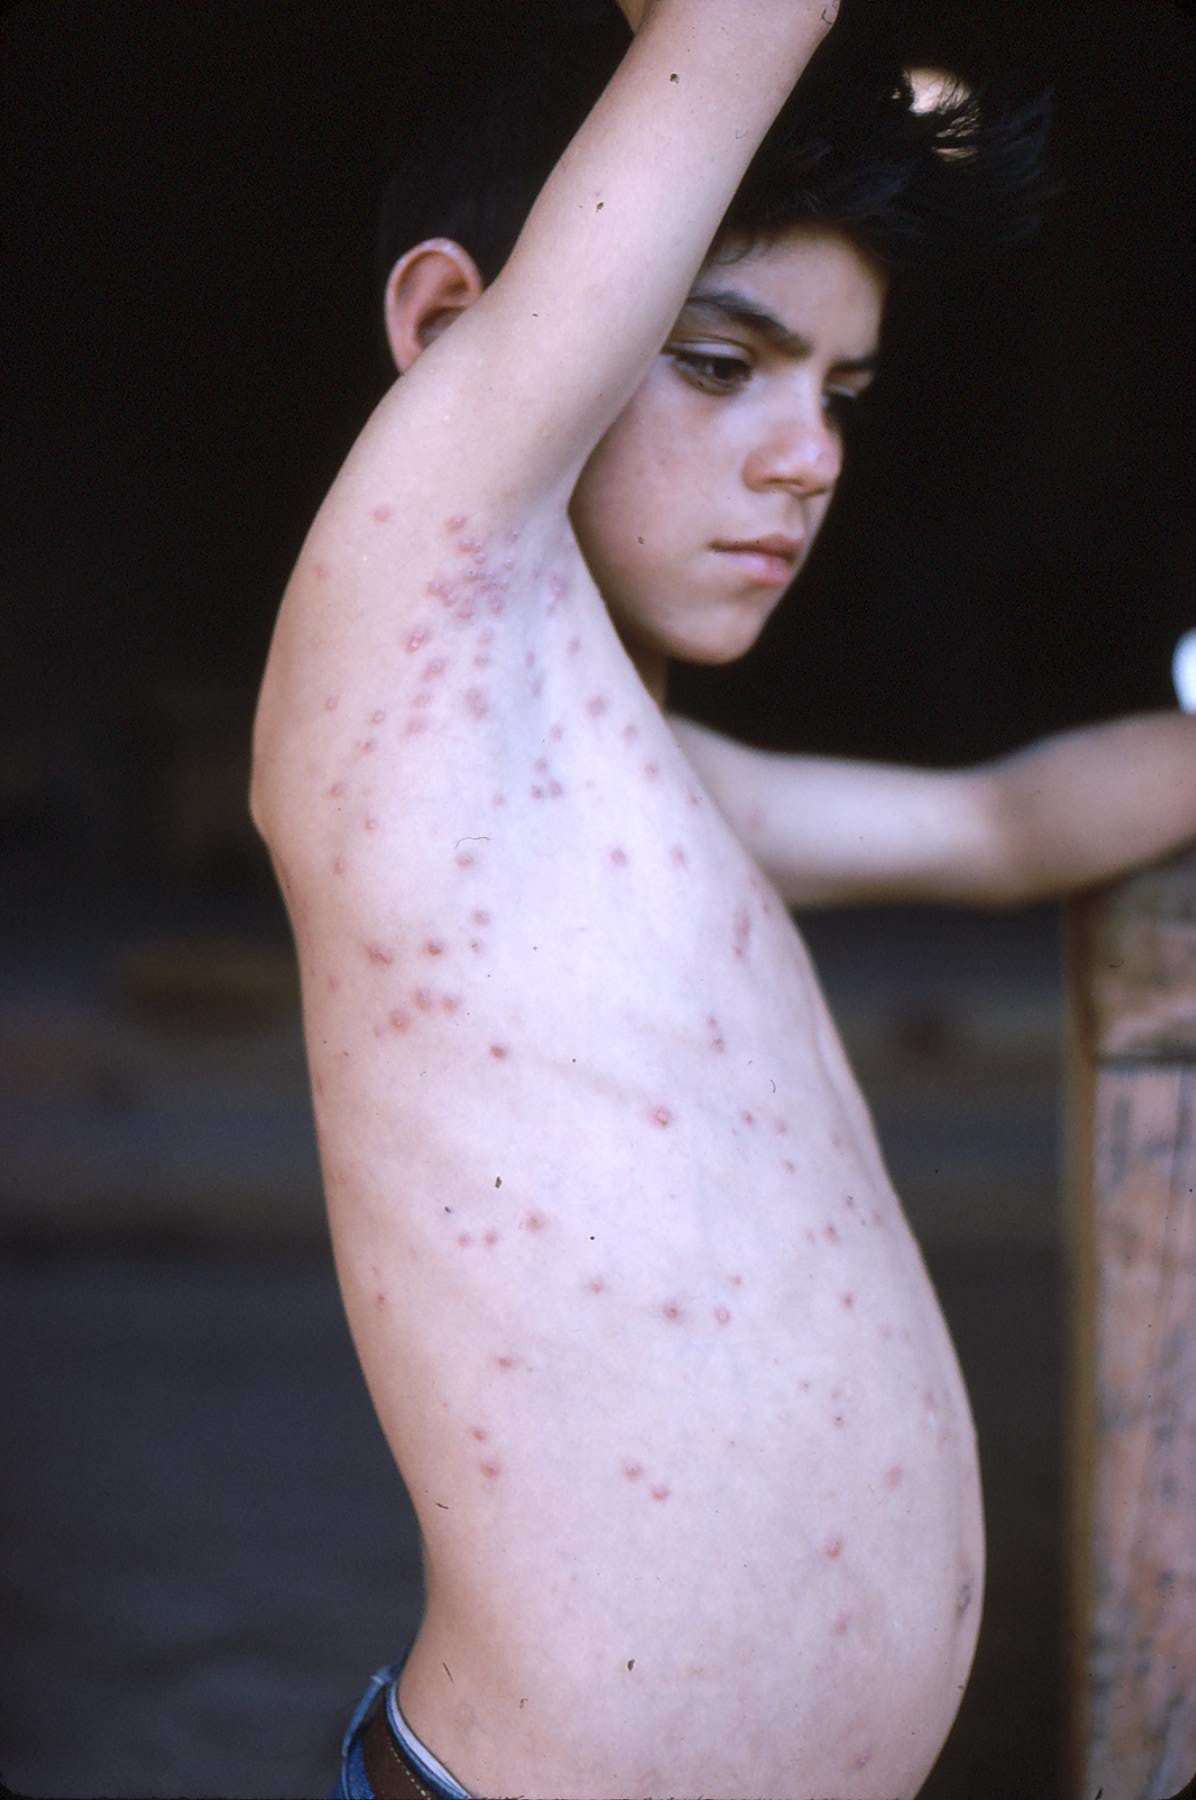 El sarampión era una epidemia en la Sierra Madre antes de la vacunación.